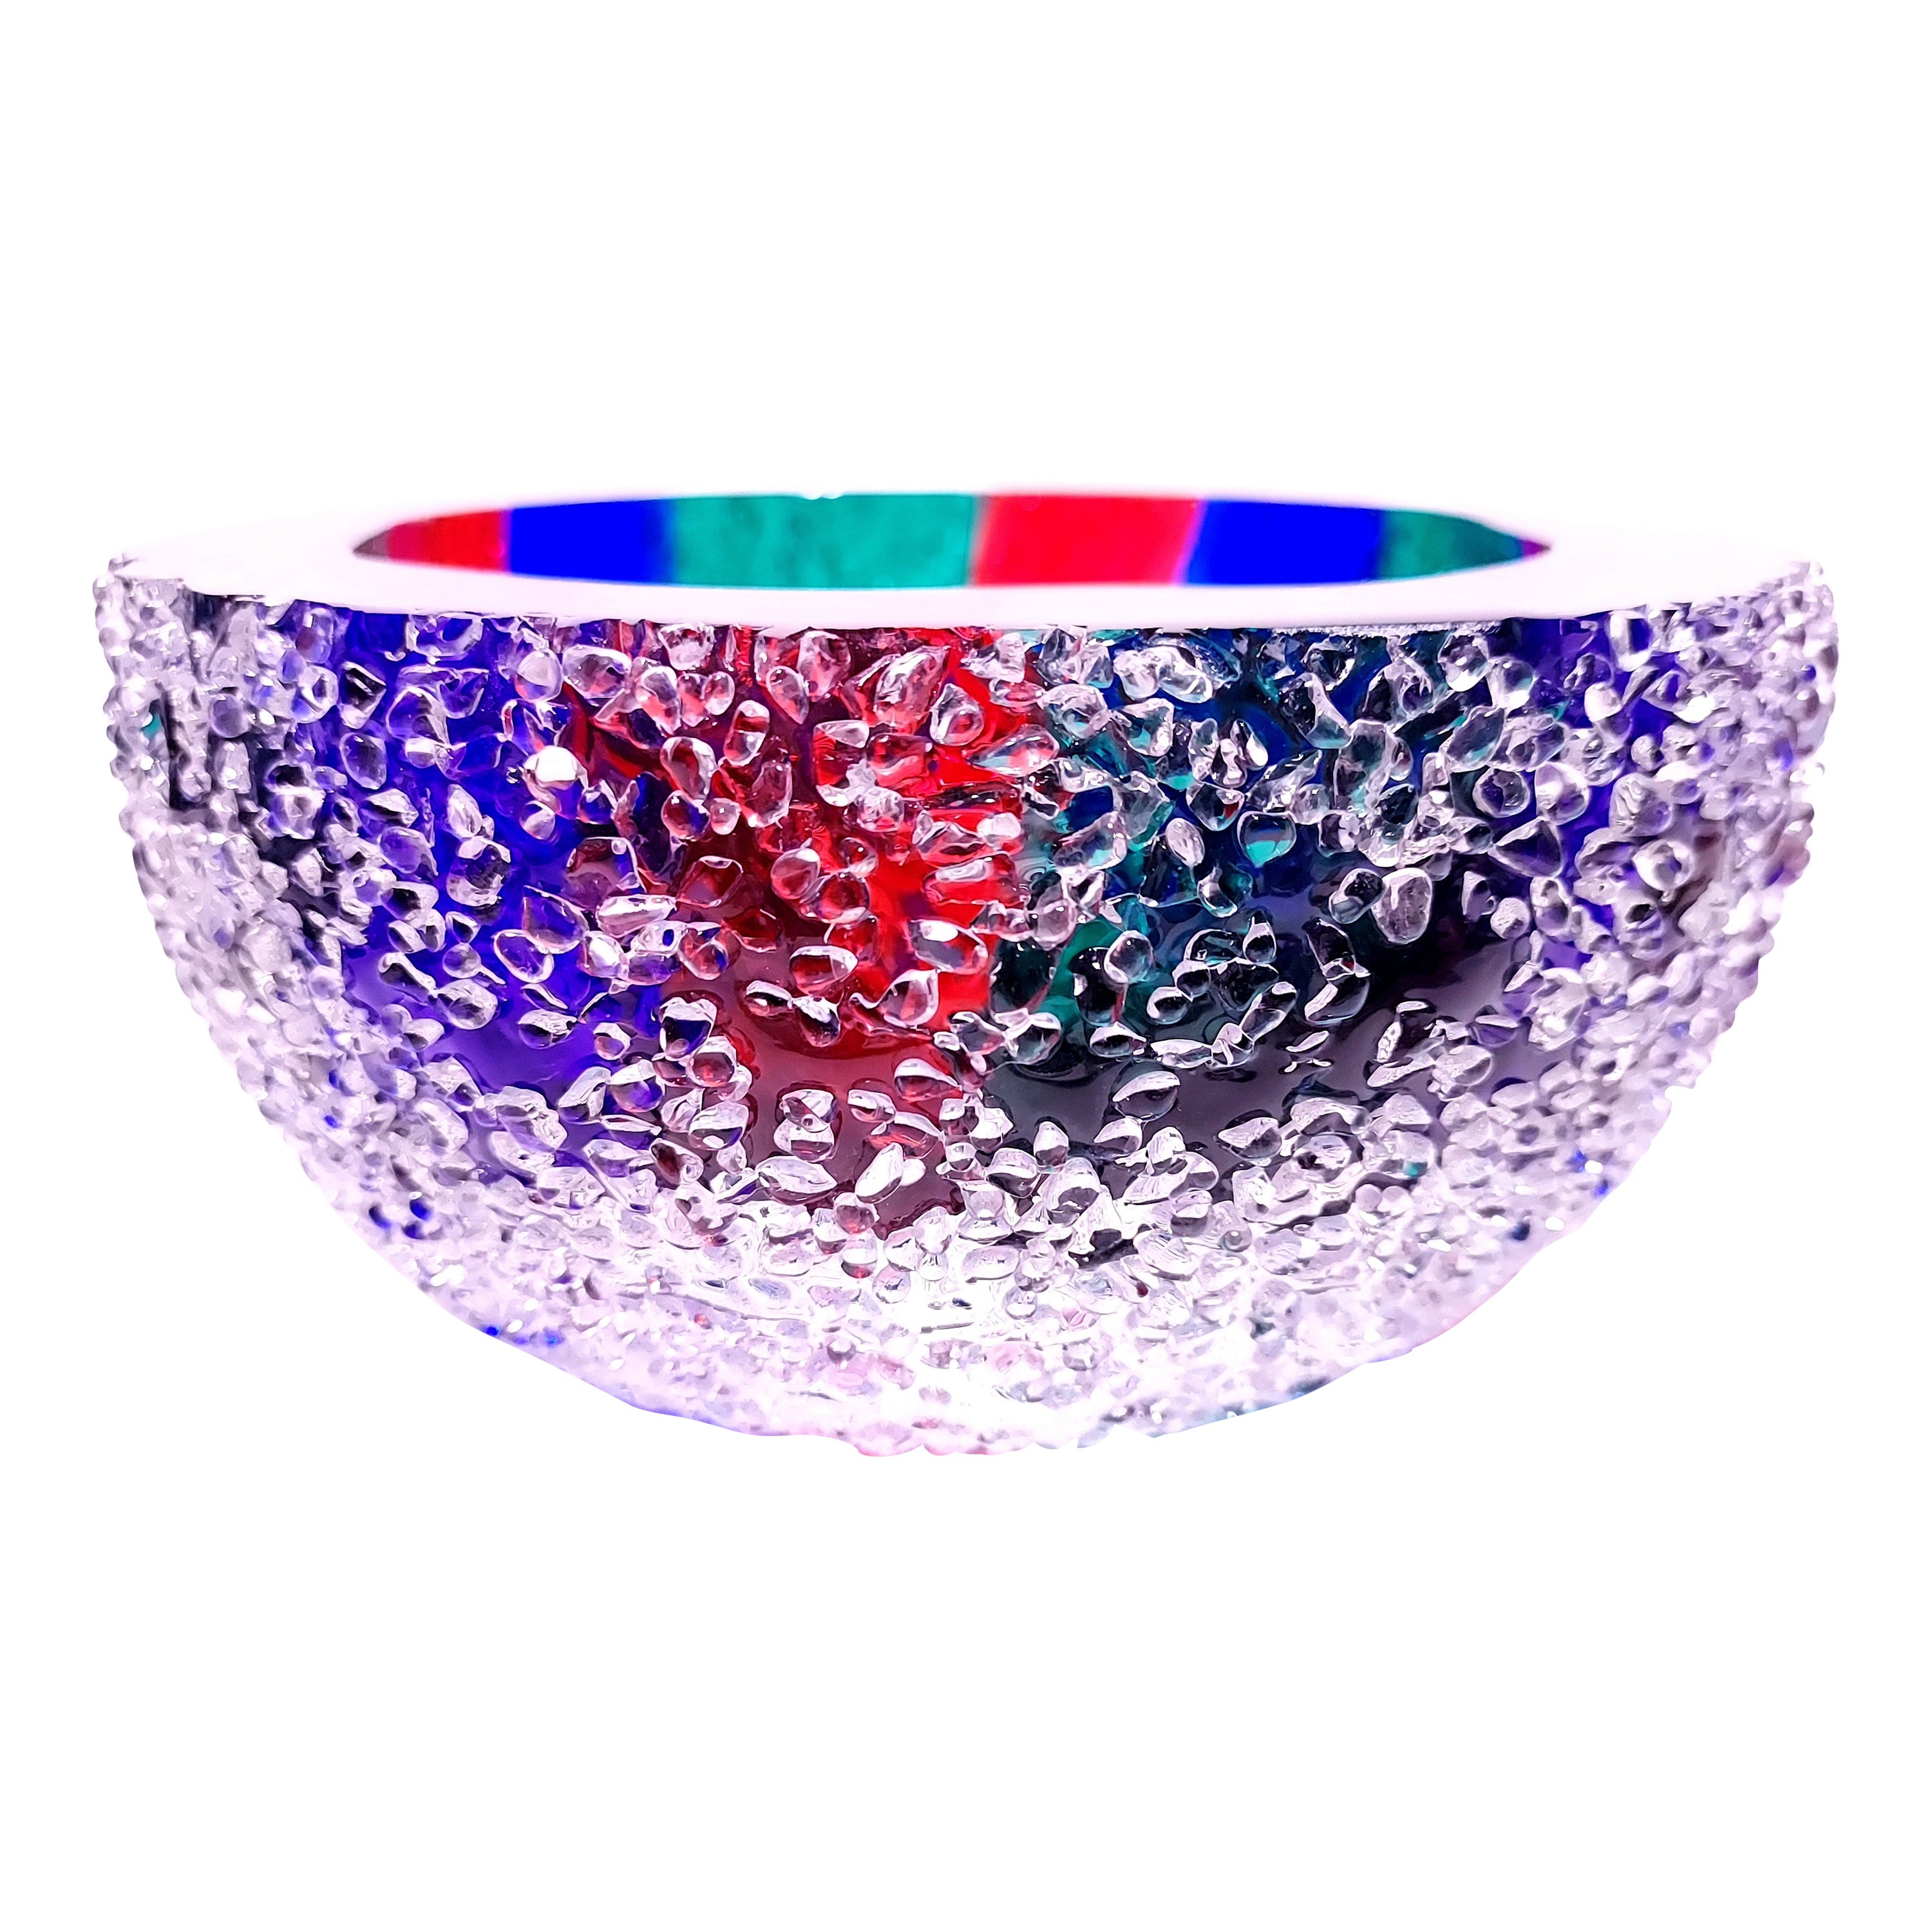 Bol en cristal couleur RGB, récipient en verre de luxe contemporain fait à la main